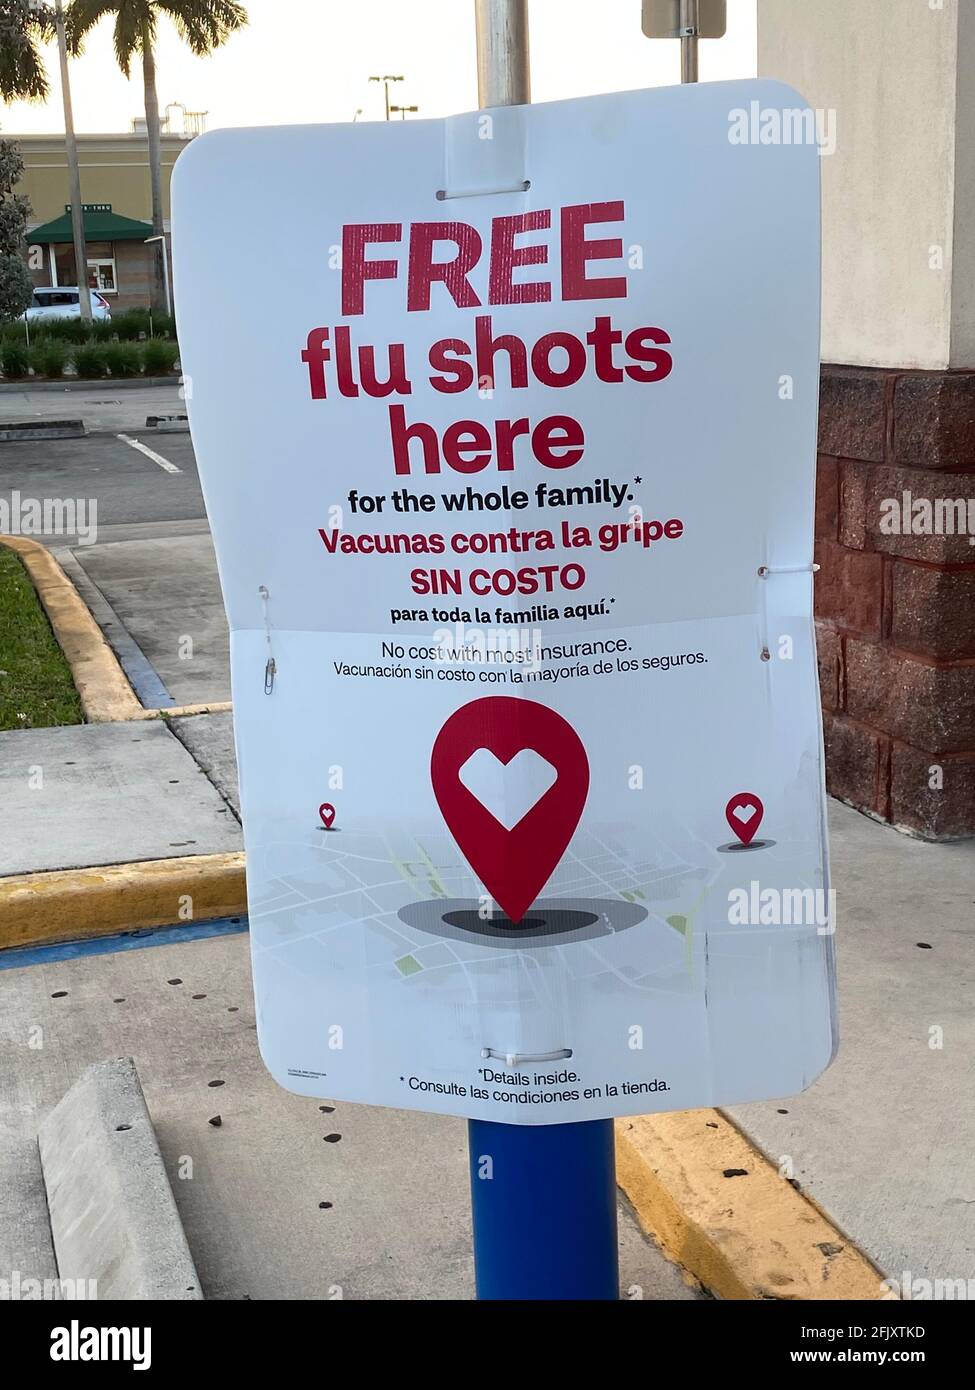 CVS Pharmacy Signo bilingüe al aire libre para vacunas contra la gripe gratis disponibles para toda la familia. Foto de stock